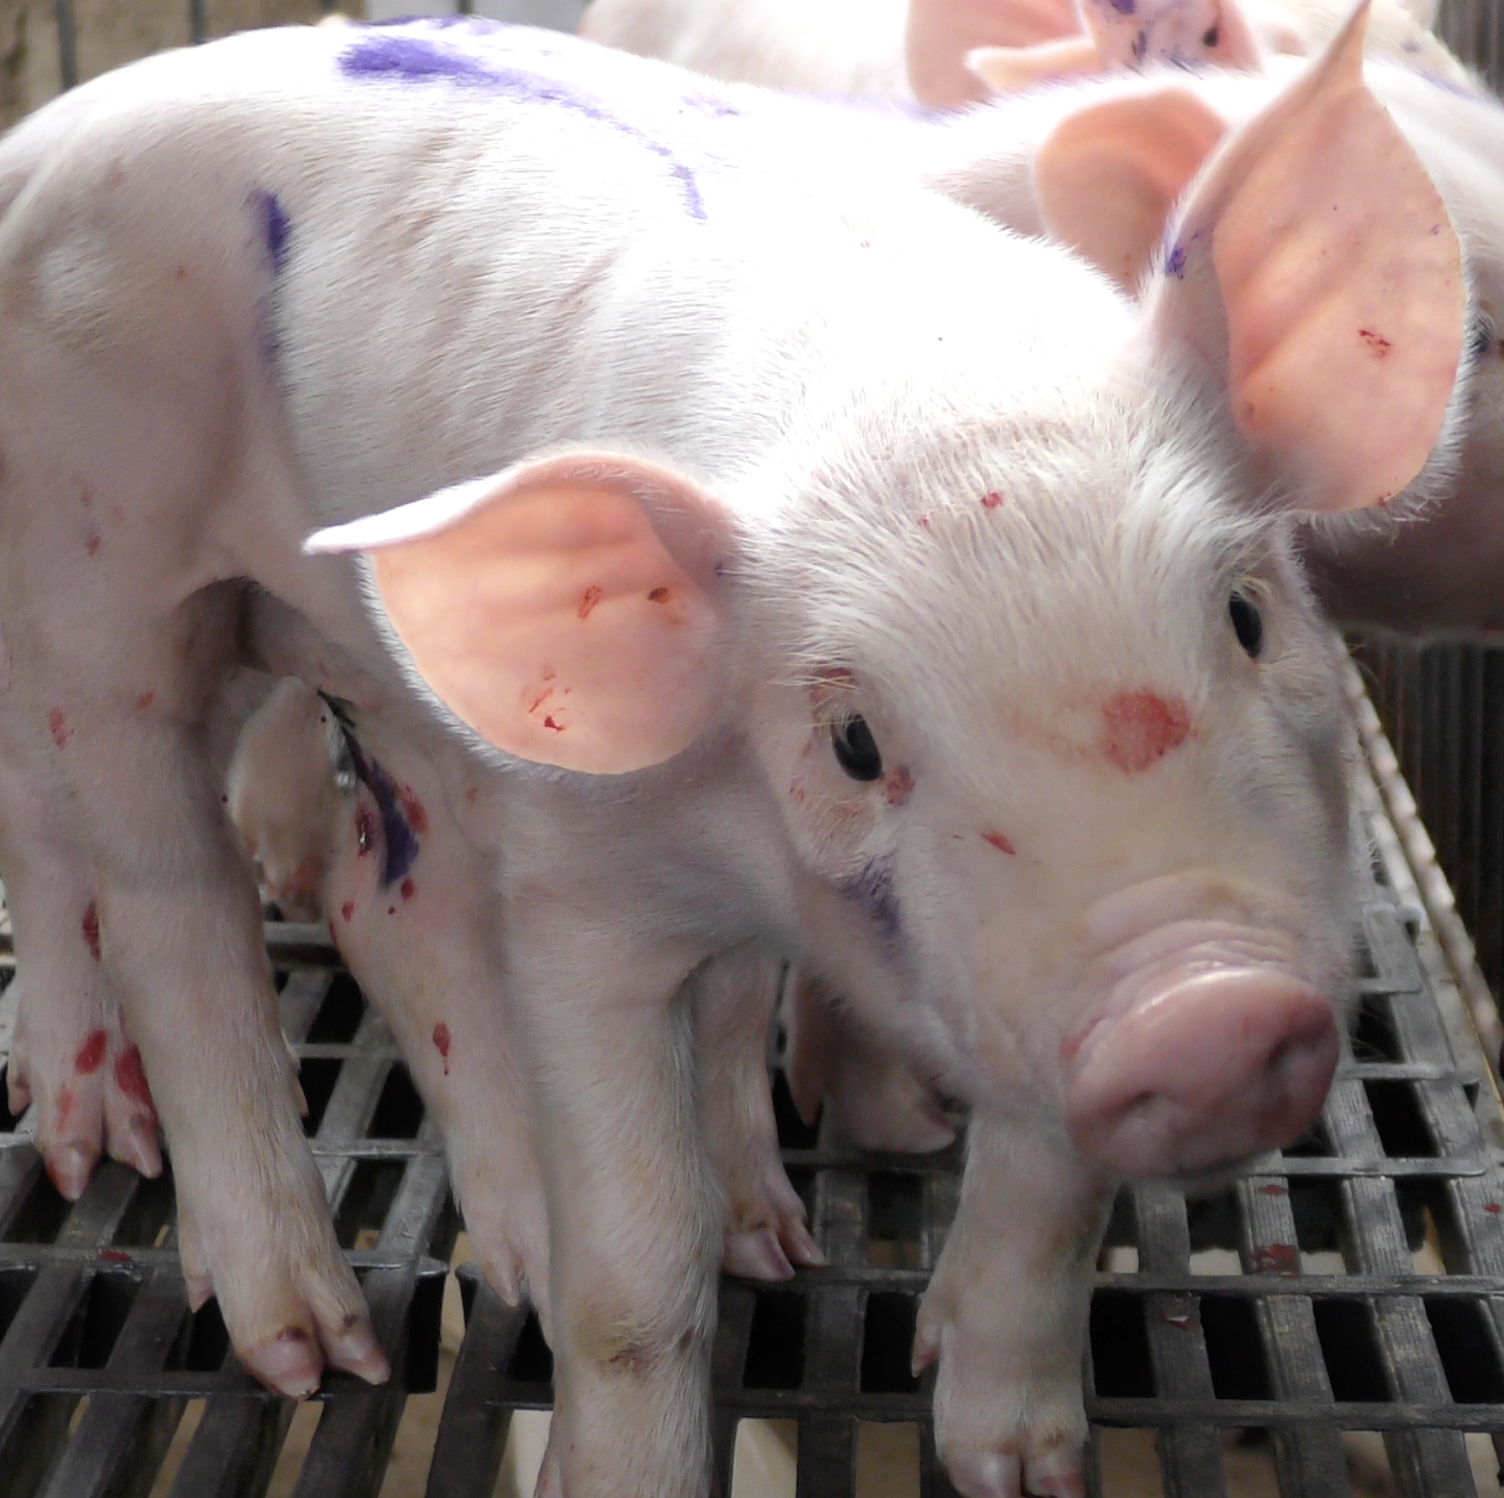 Cerdo manchado de sangre en granja de cerdos en México